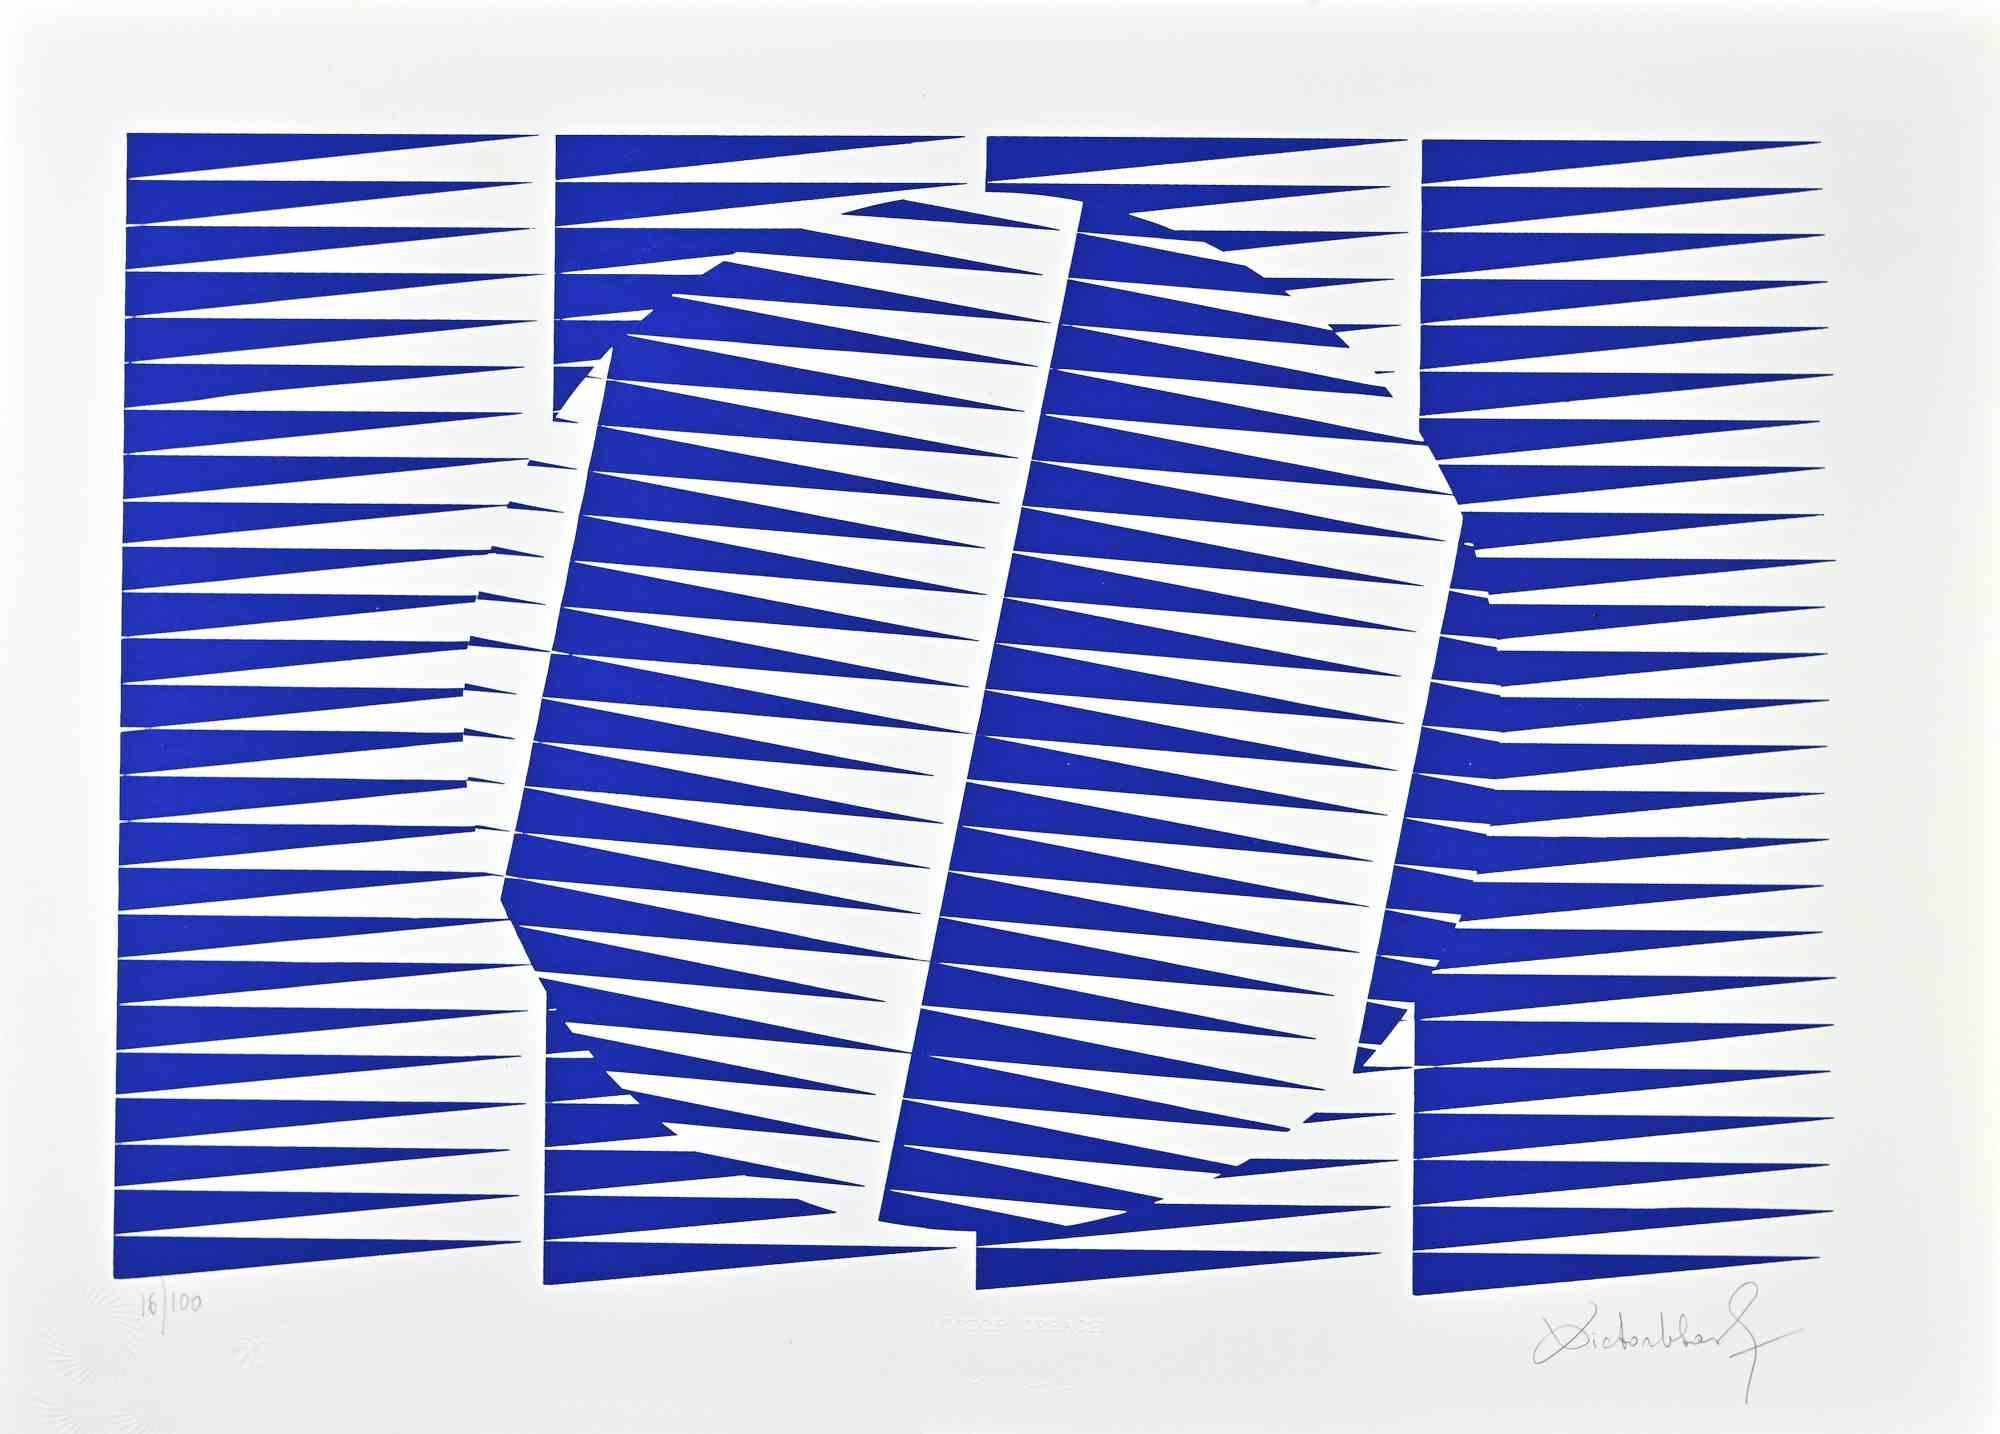 Composition abstraite bleu électrique est une sérigraphie sur papier réalisée par Victor Debach dans les années 1970.

Édition limitée à 100 exemplaires numérotés et signés par l'artiste au crayon dans la marge inférieure.

Edition 16/100

Très bon